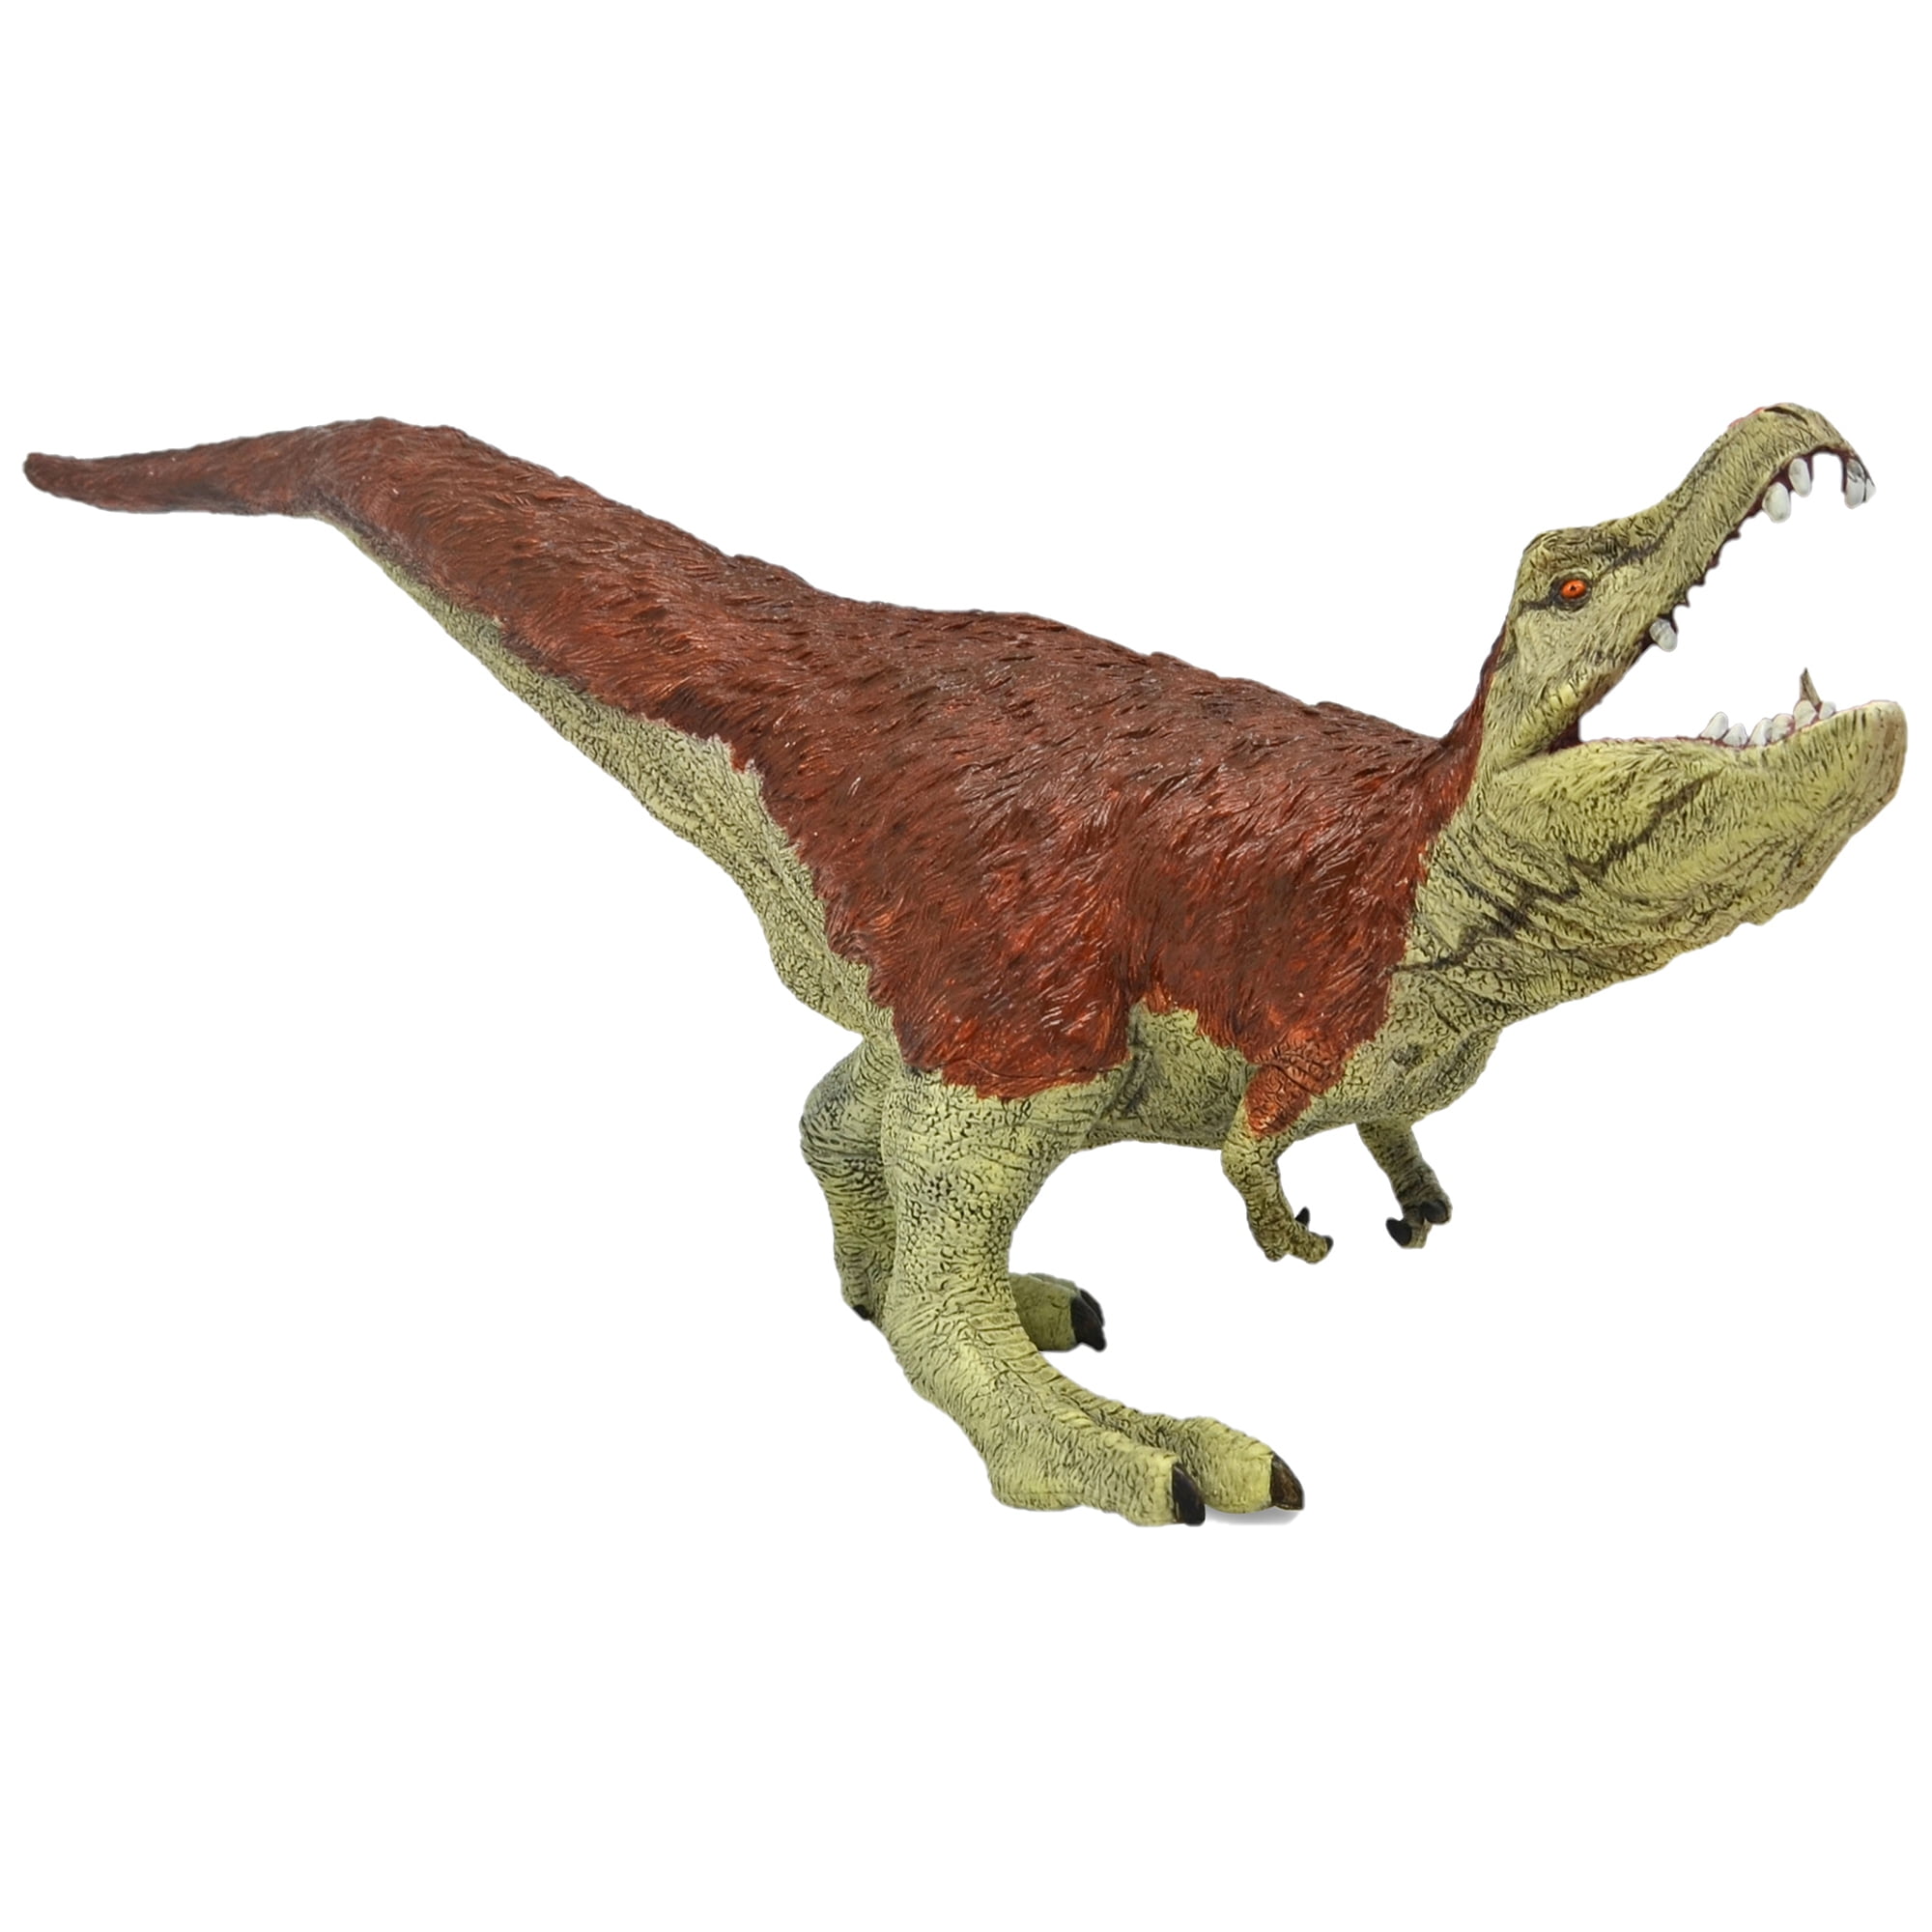 New Large Realistic Therizinosaurus Action Figure Dinosaur Toy Educational Model 